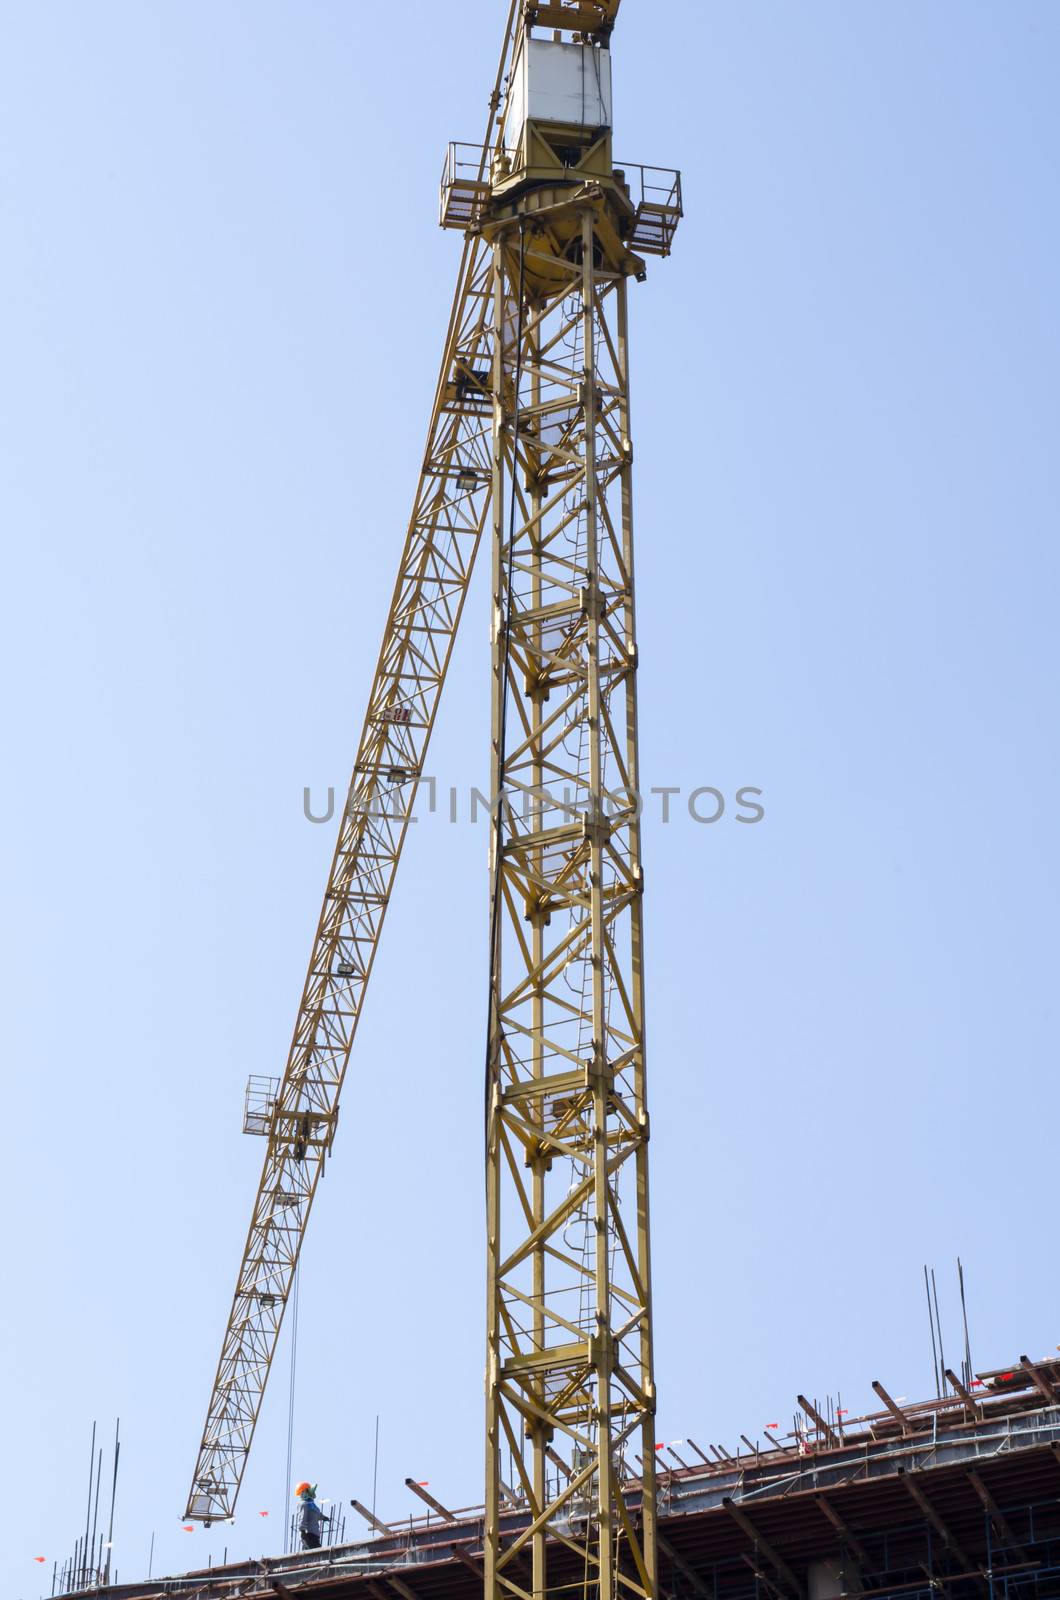 crane on blue sky background by ammza12